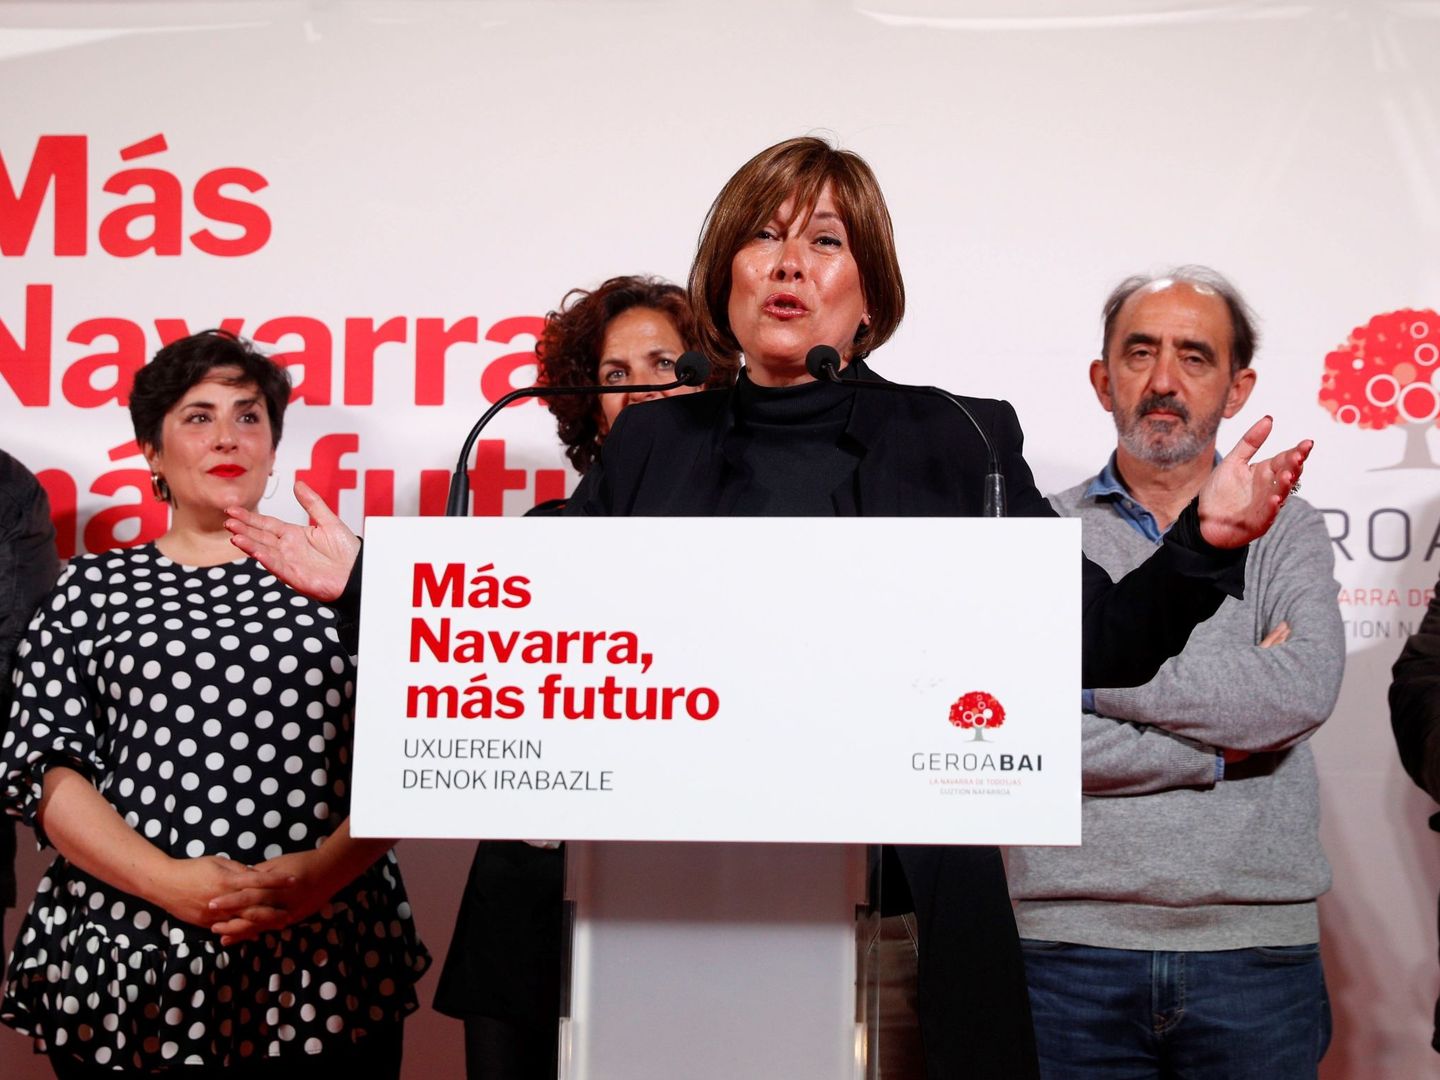 La presidenta del Gobierno de Navarra y candidata de Geroa Bai, Uxue Barkos. (EFE)